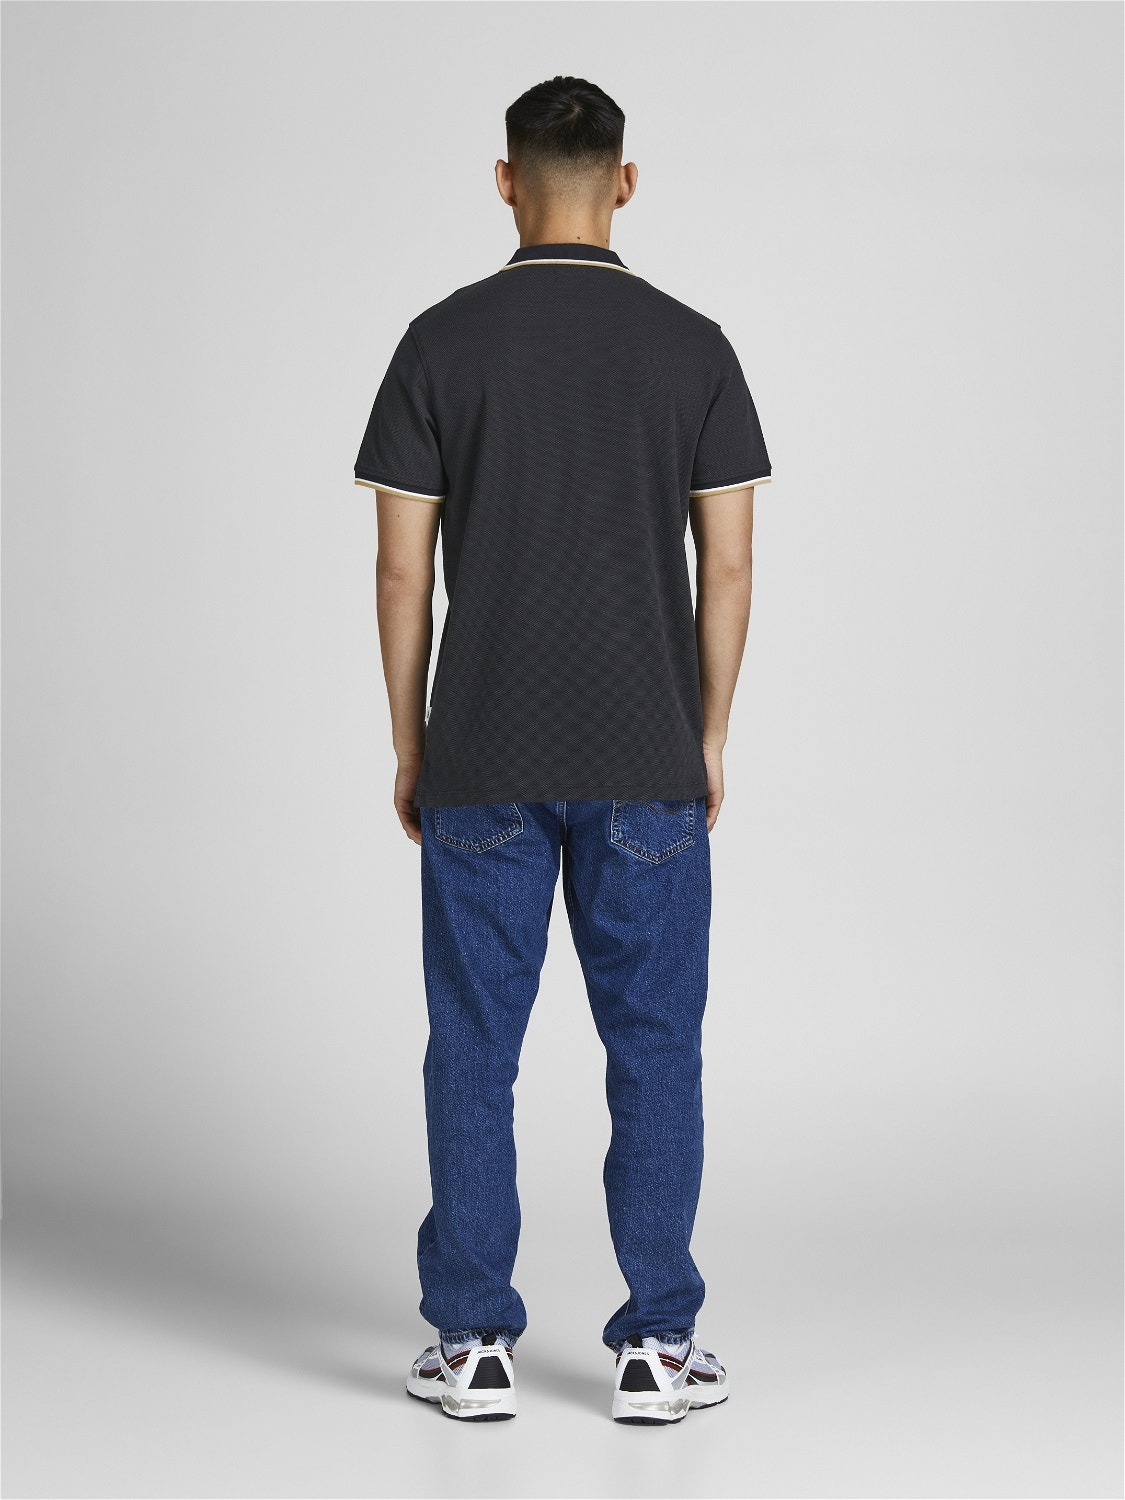 Jack & Jones Enfärgat Polo T-shirt -Black - 12169064